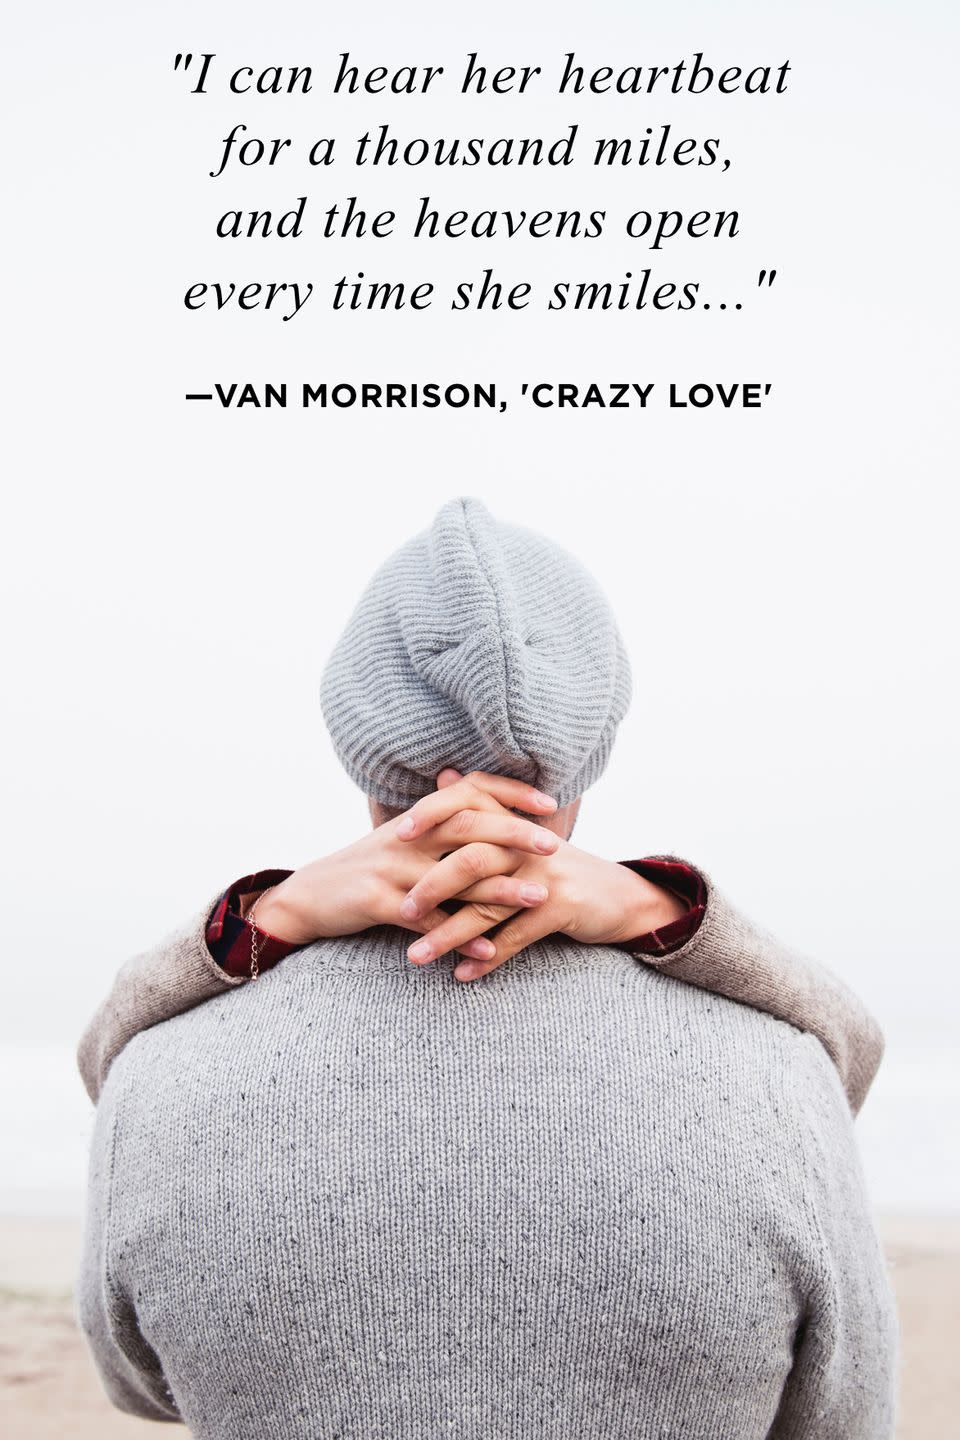 24) Van Morrison, 'Crazy Love'